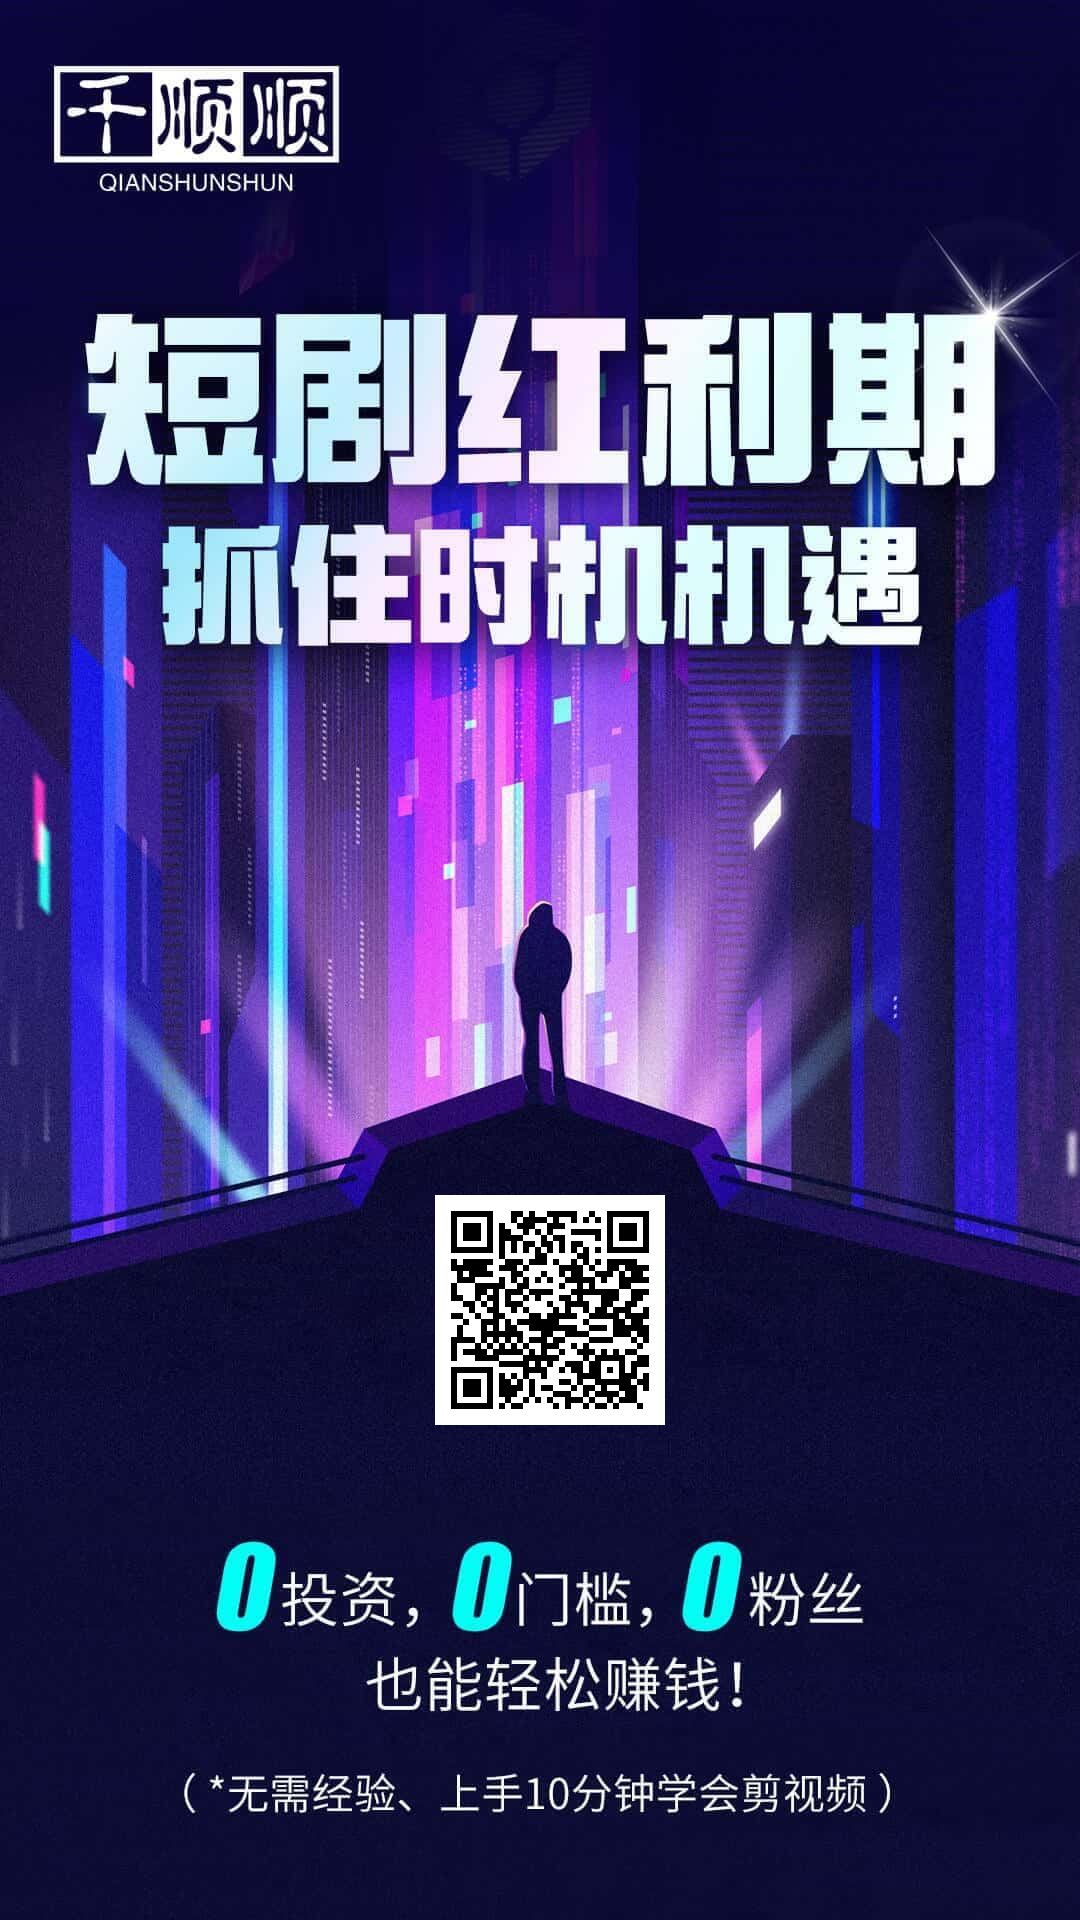 千顺顺注册海报3.png